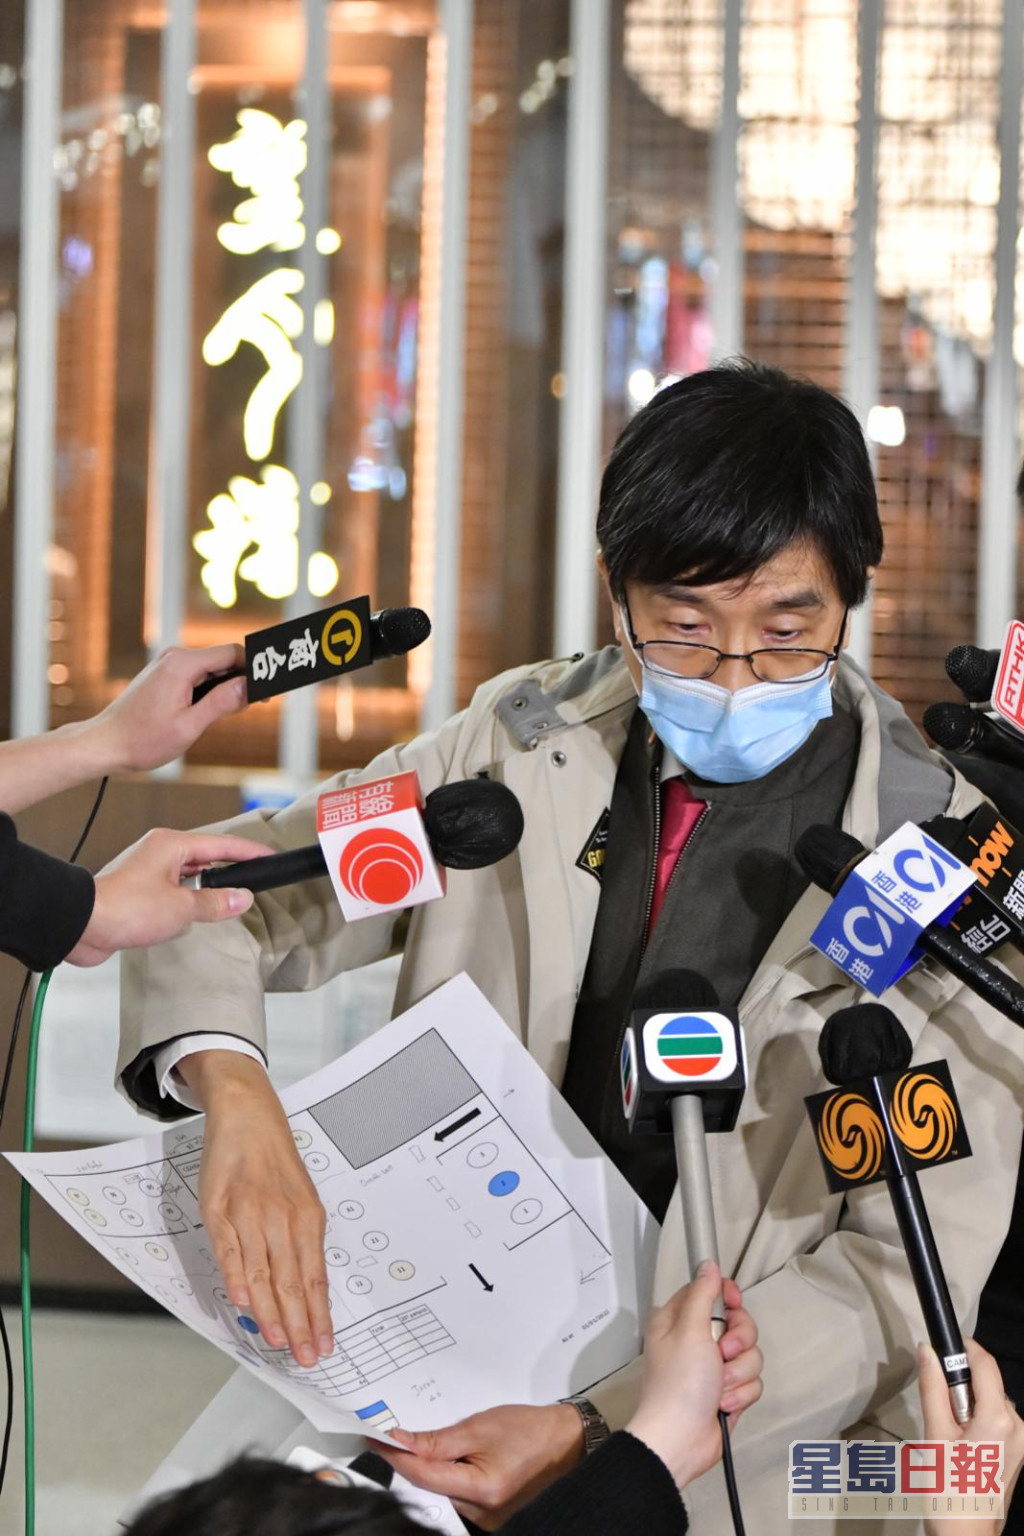 袁国勇指Omicron病毒非常容易传播，相信病毒已经在社区蔓延。